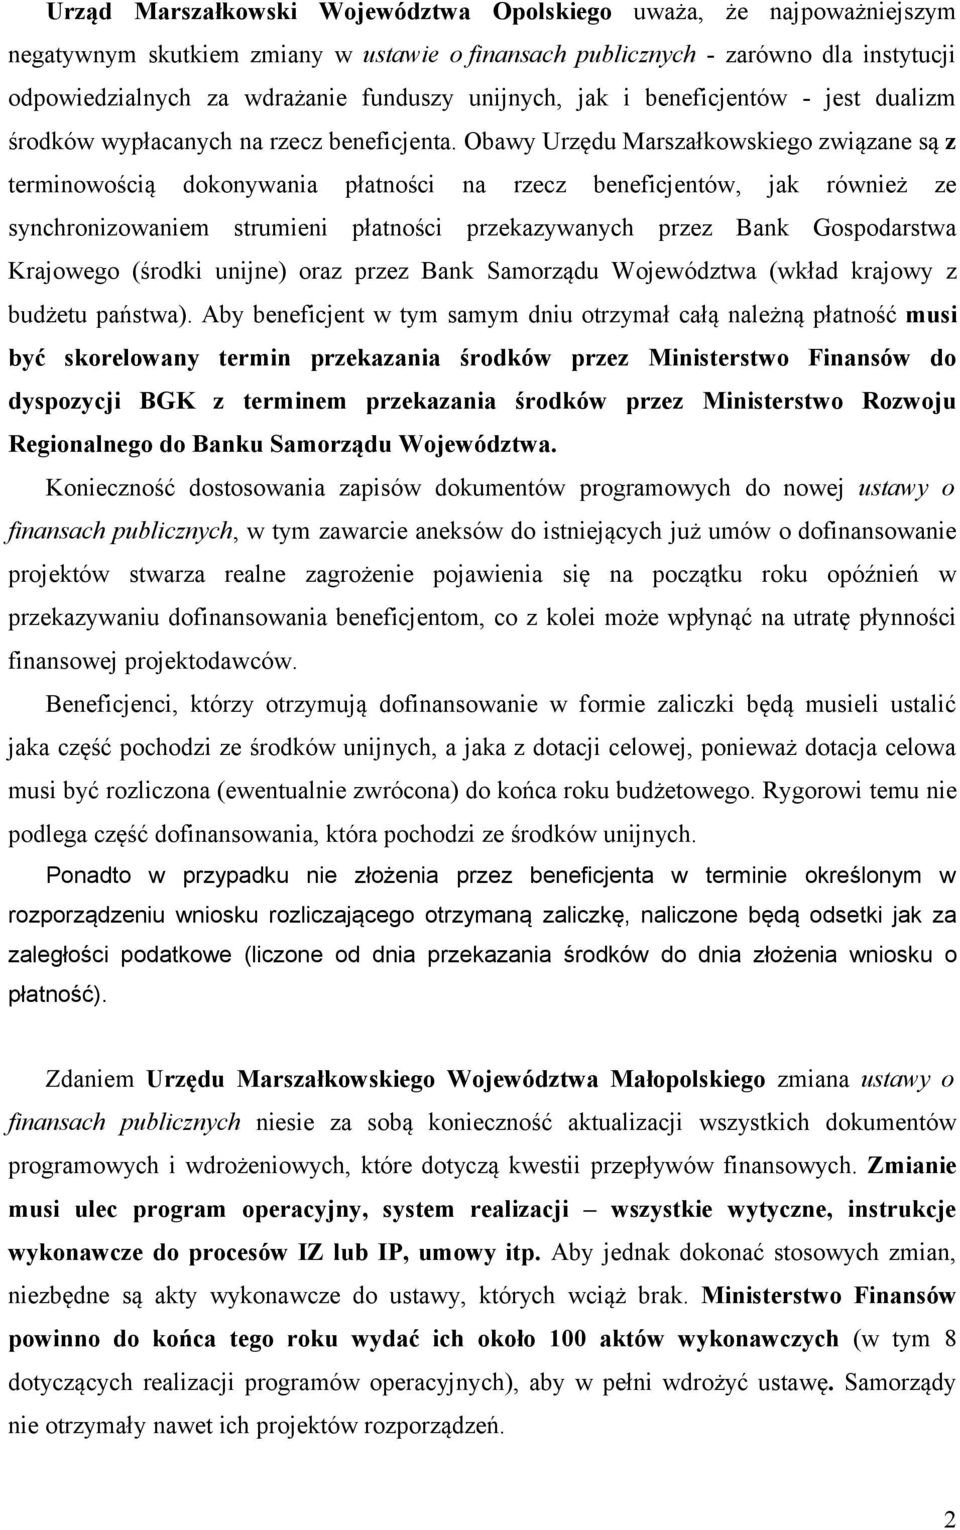 Obawy Urzędu Marszałkowskiego związane są z terminowością dokonywania płatności na rzecz beneficjentów, jak również ze synchronizowaniem strumieni płatności przekazywanych przez Bank Gospodarstwa